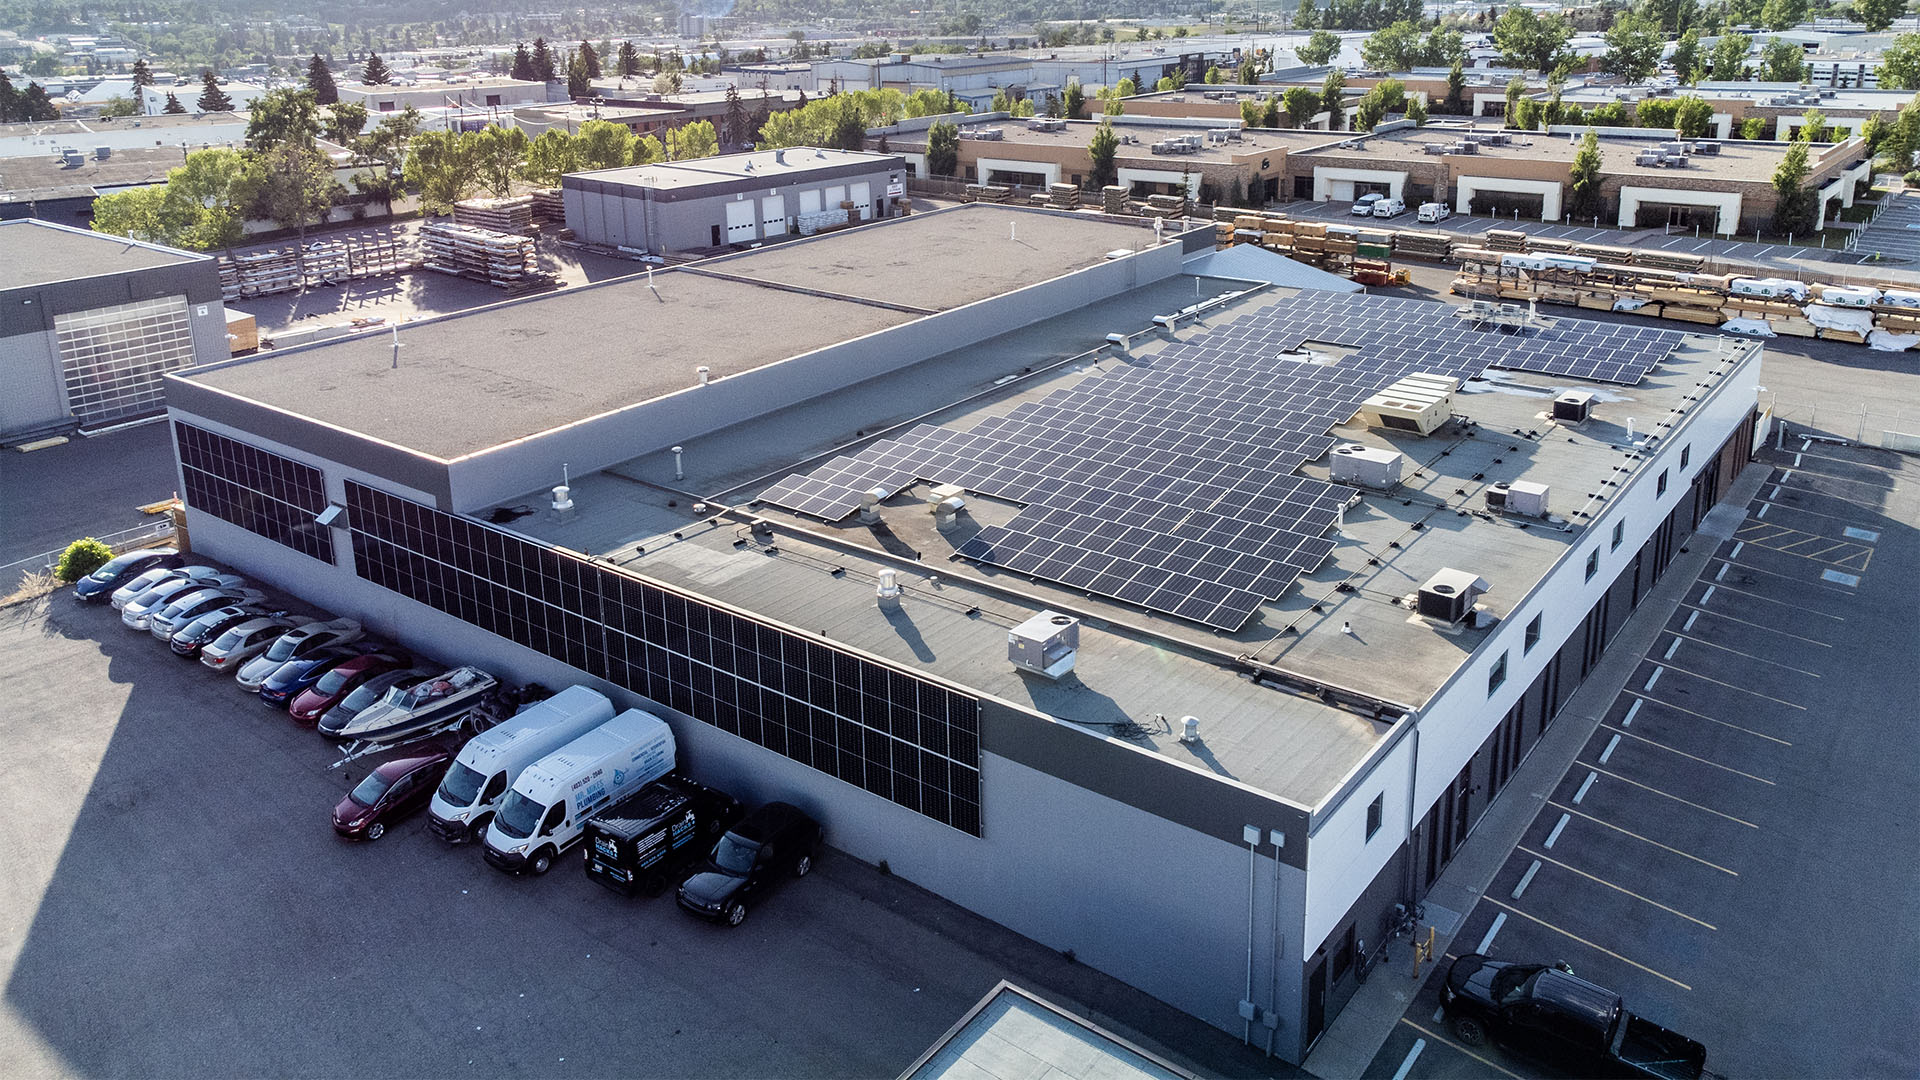 Timbertown roof top solar array